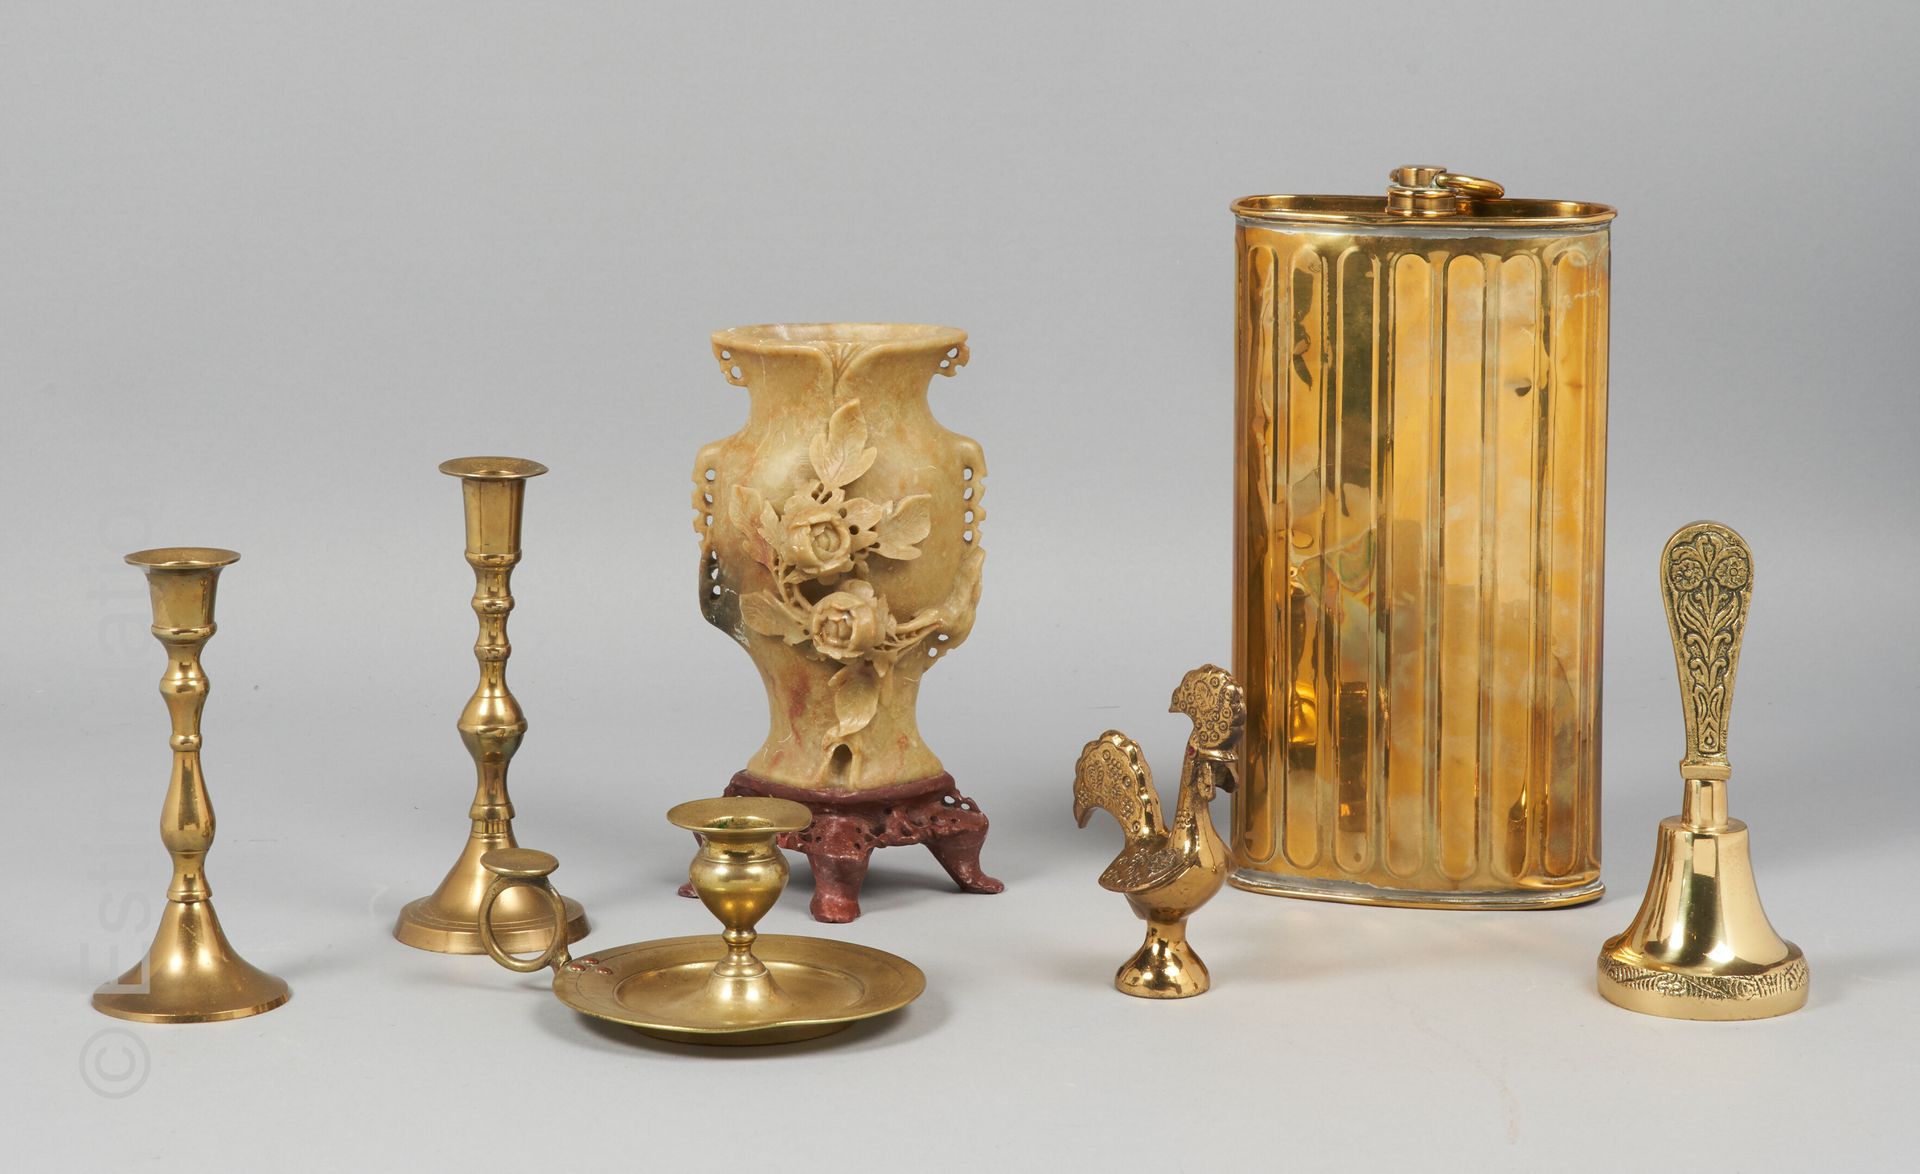 DIVERS 各种物品和小饰品 :

- 硬石雕刻的花瓶及其四角形底座 - 高度：21厘米

- 黄铜烛台一对 - 高度：17厘米

- 青铜手摇铃

- 黄铜&hellip;